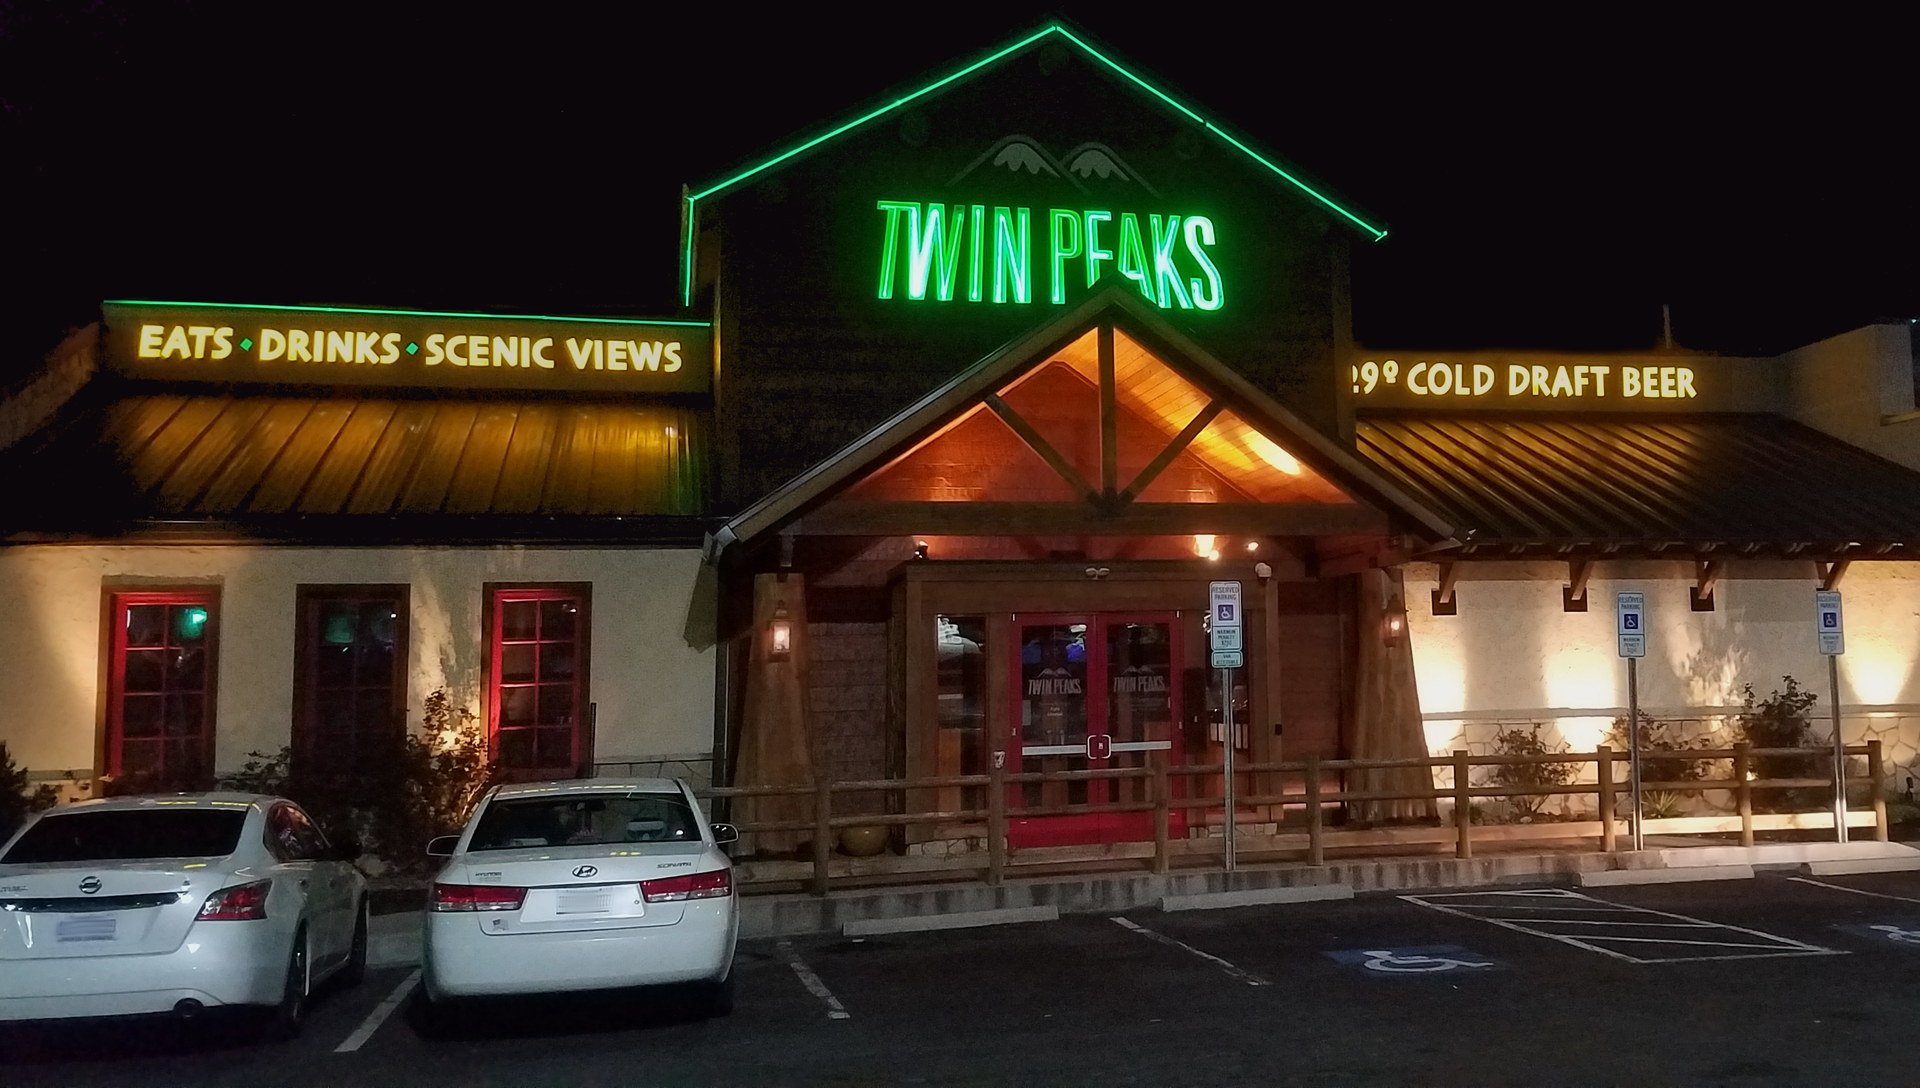 Twin Peaks nighttime exterior by Breawycker